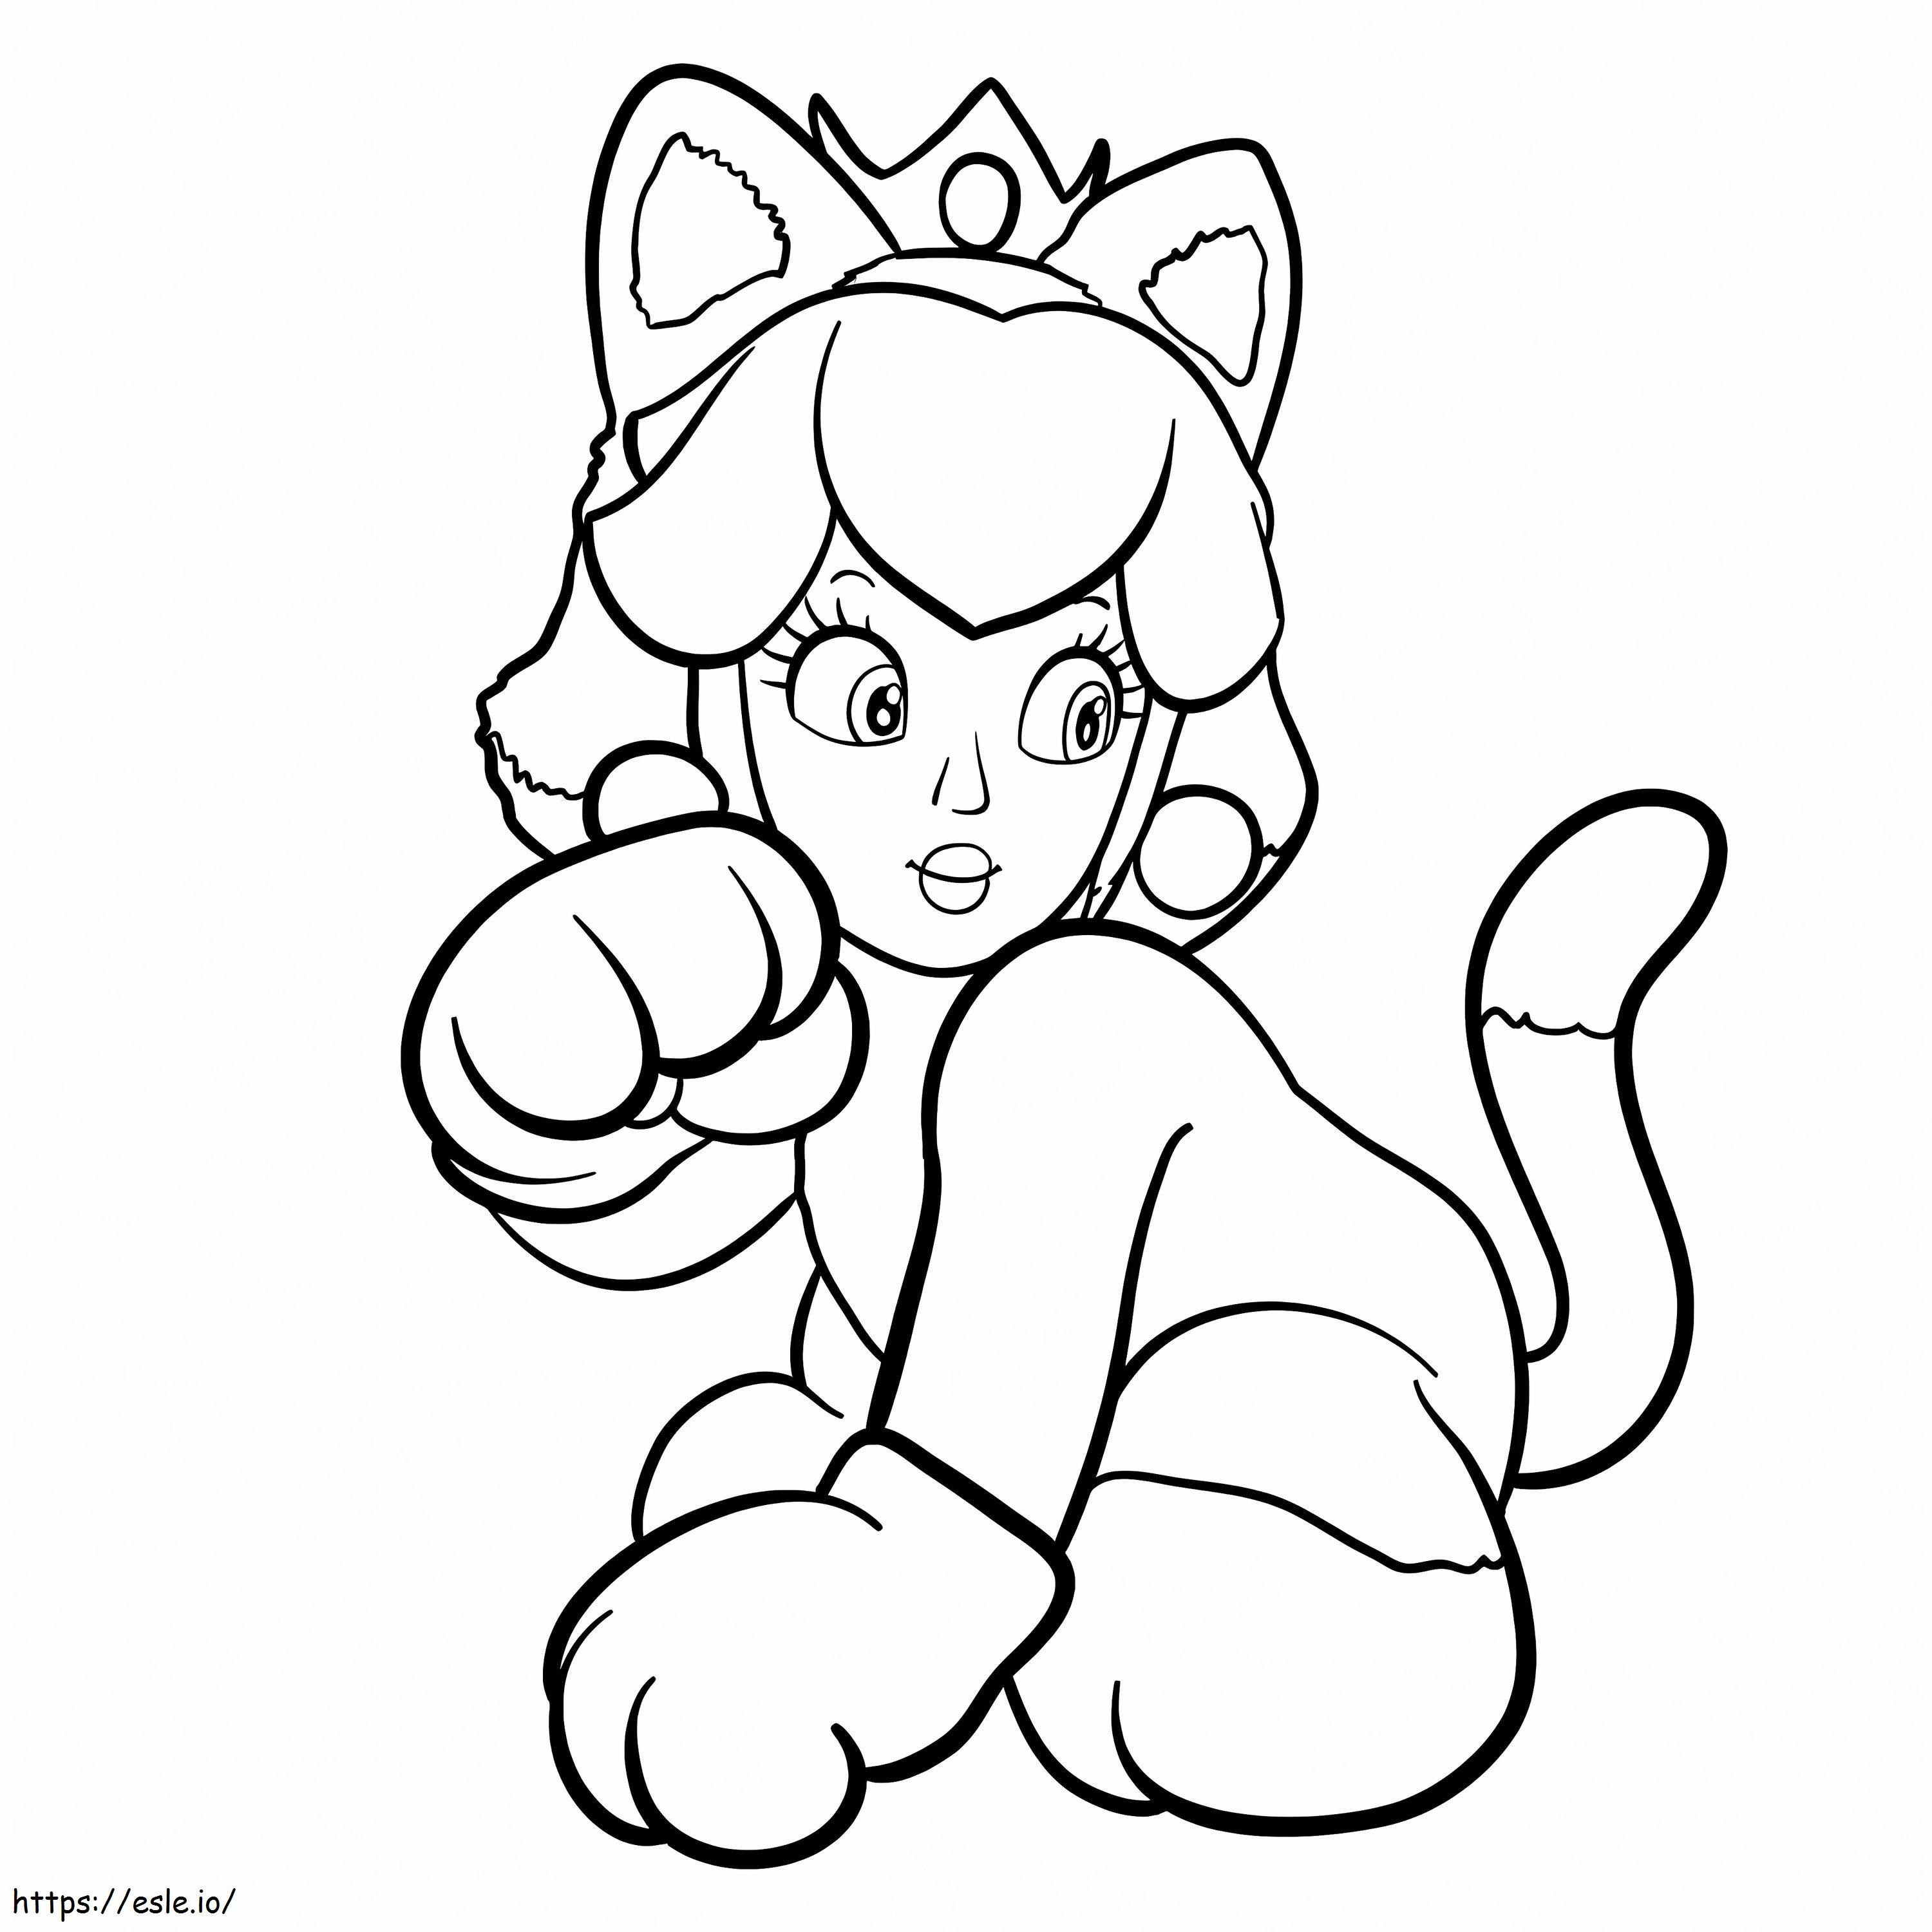 Princesa Peach em uma fantasia de gato para colorir